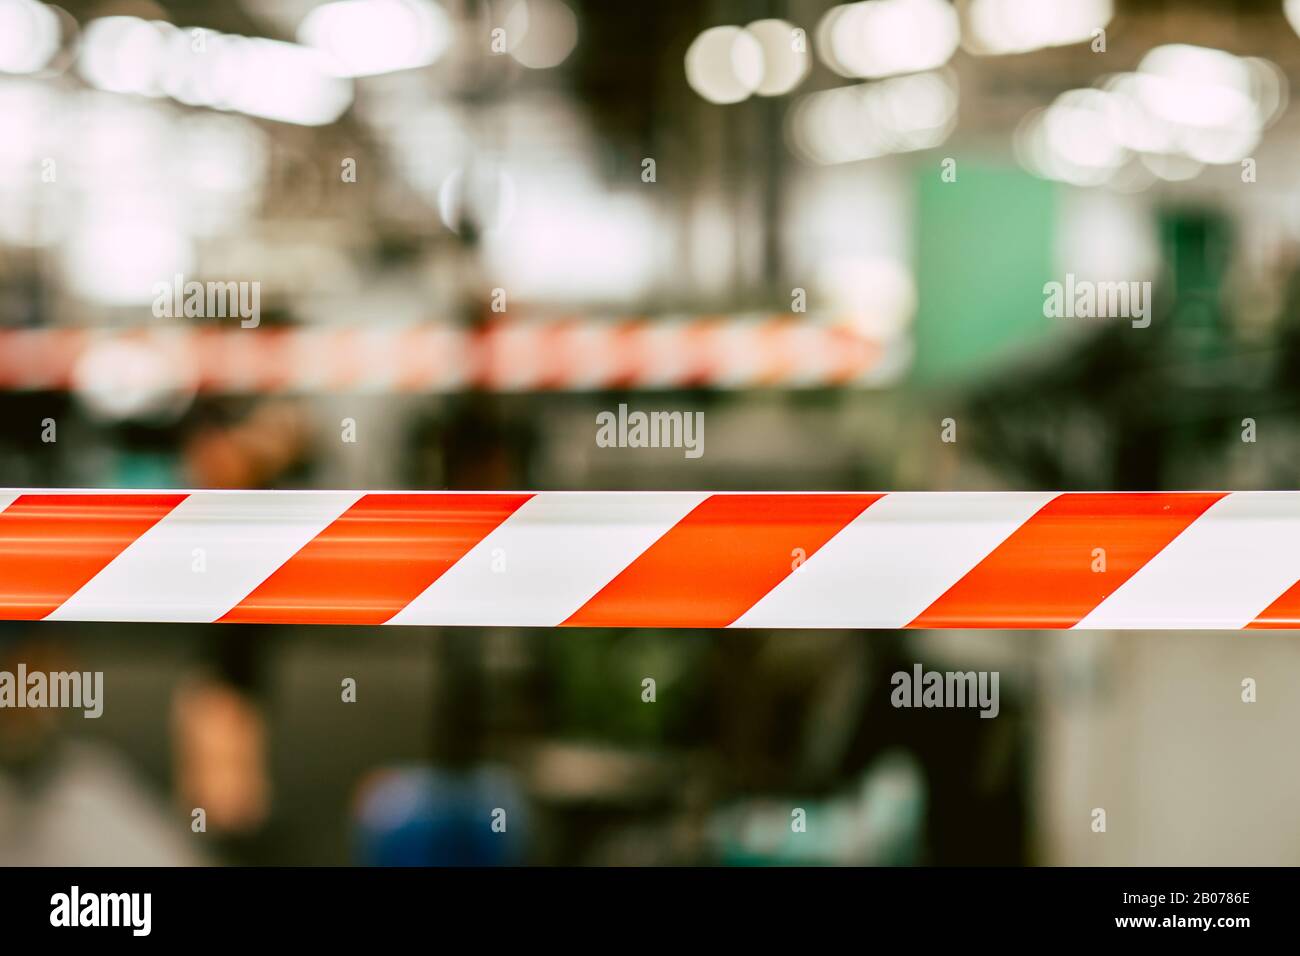 peligro zonas de seguridad precaución no introduzca cinta roja con fondo de fábrica industrial. Foto de stock